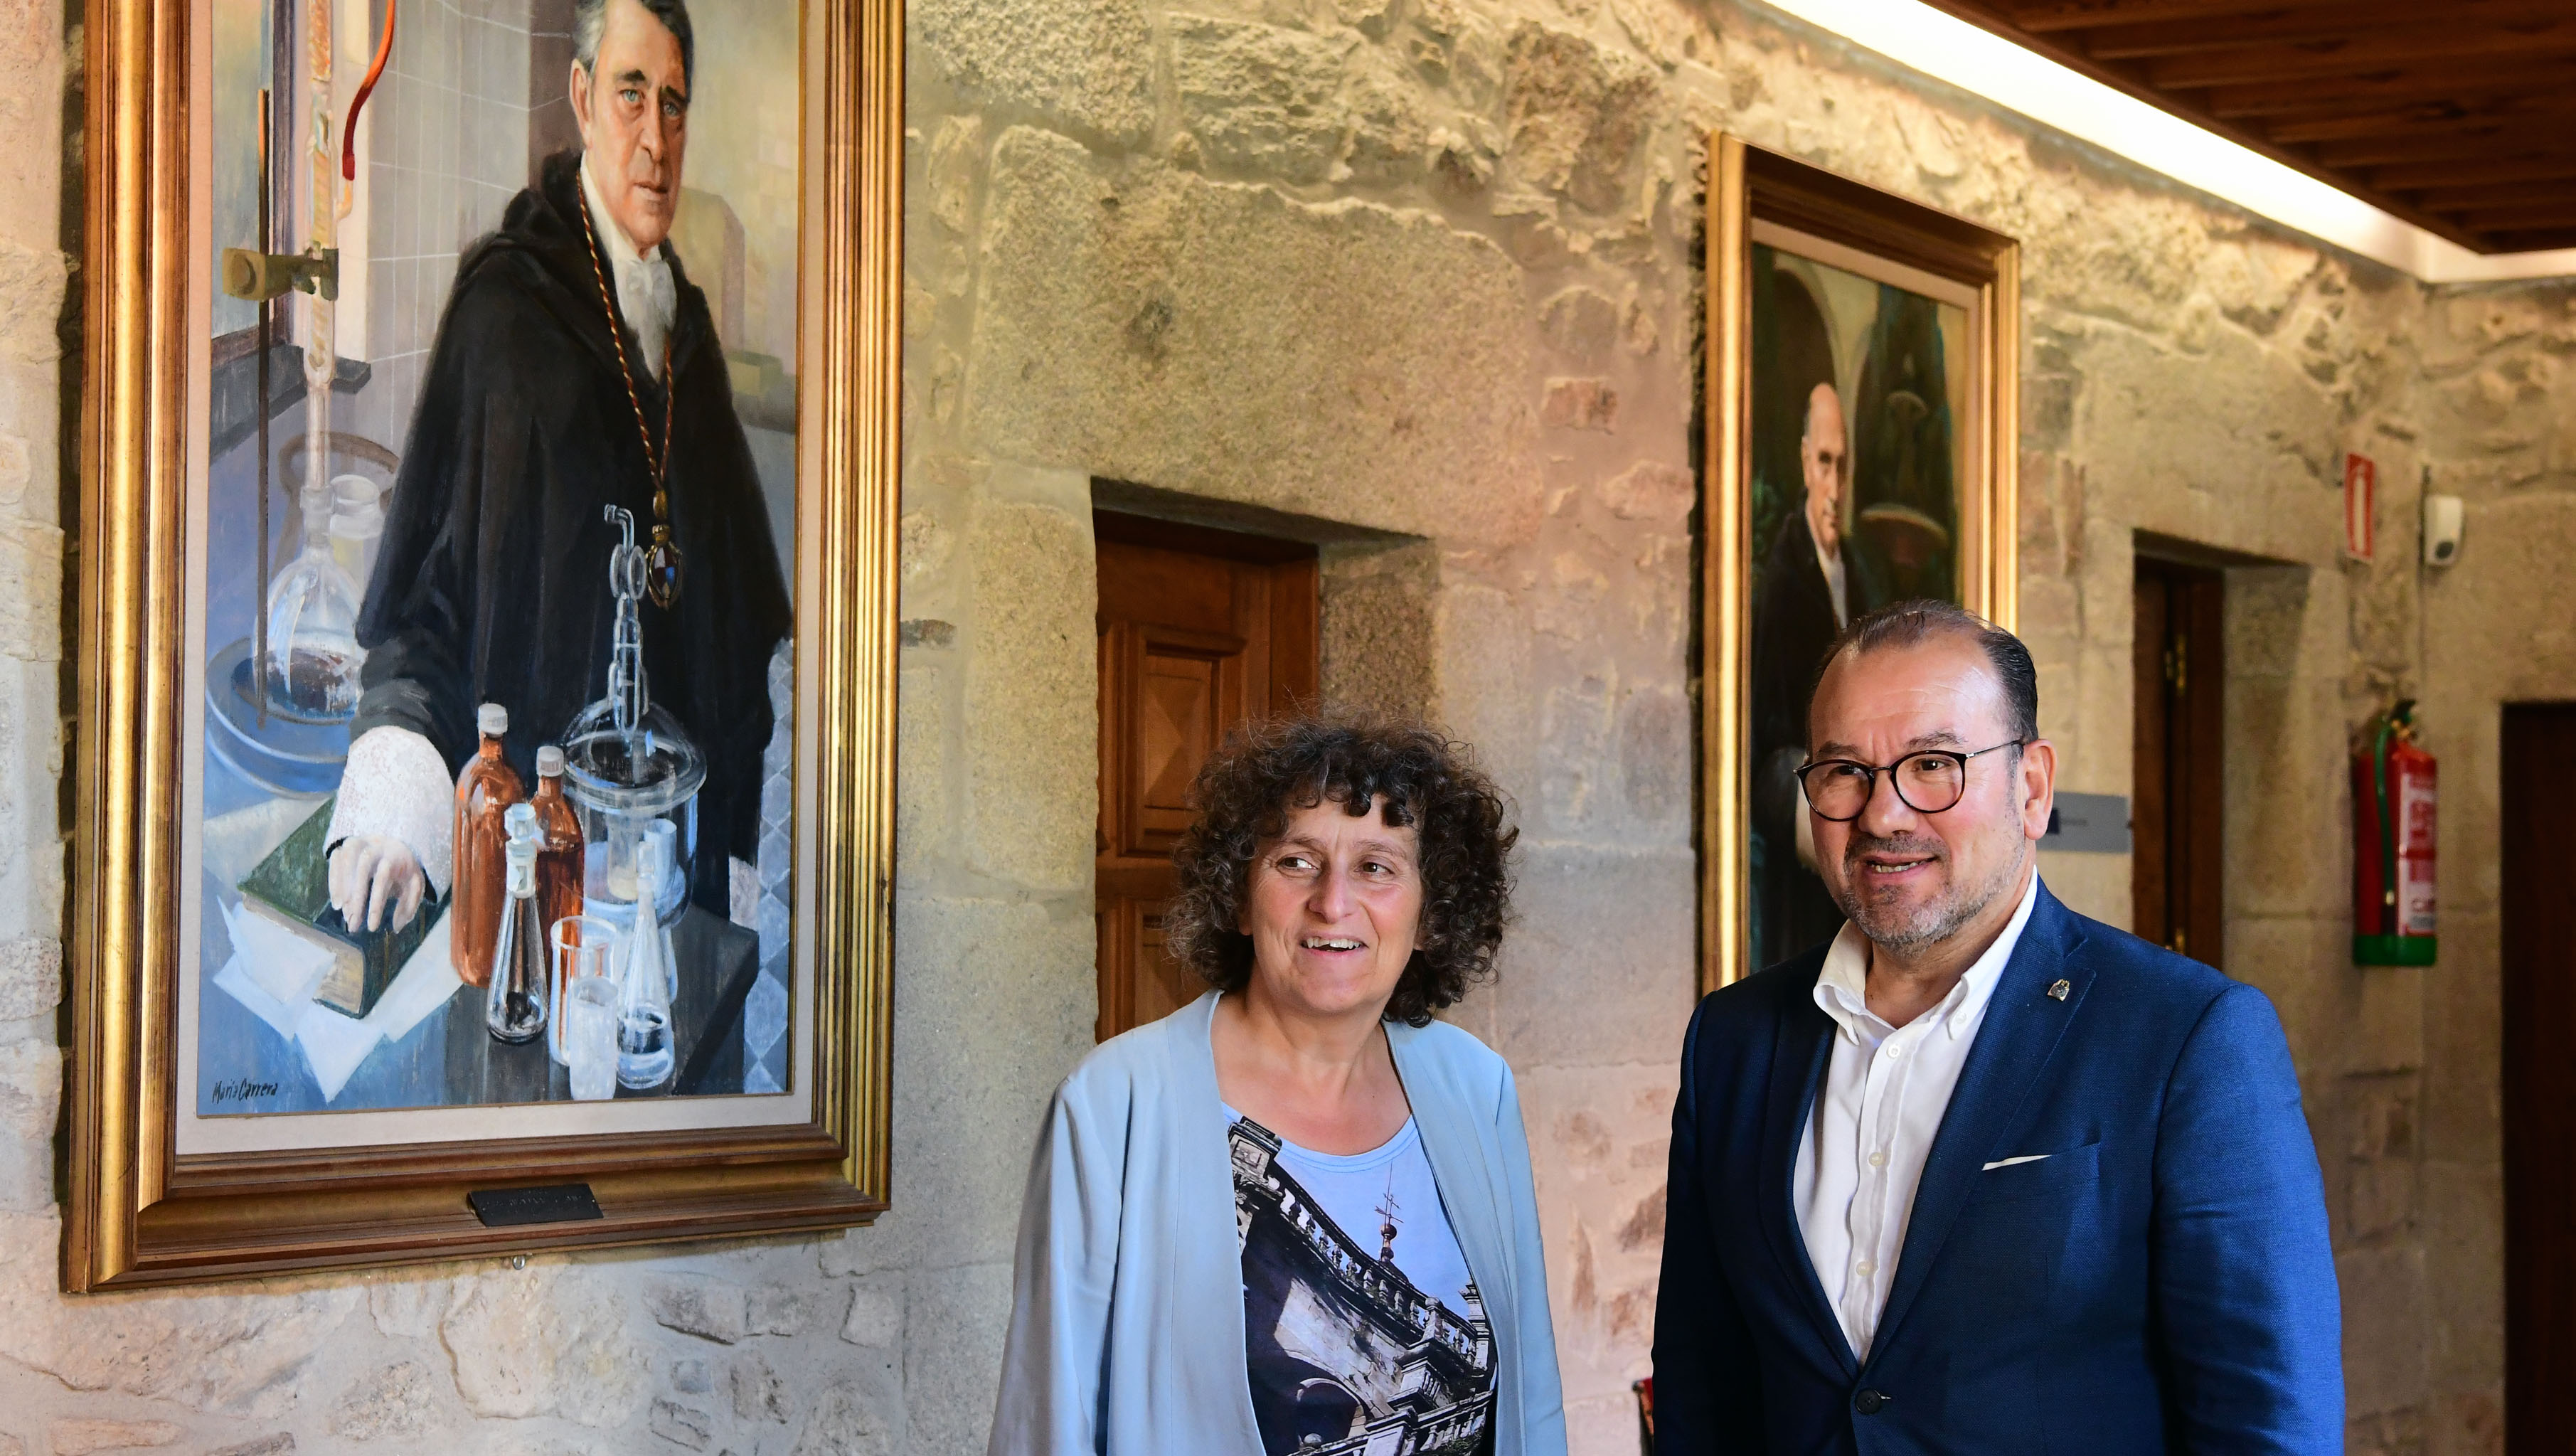 Goretti Sanmartín preséntalle ao reitor da USC unha proposta para conmemorar o centenario do Seminario de Estudos Galegos